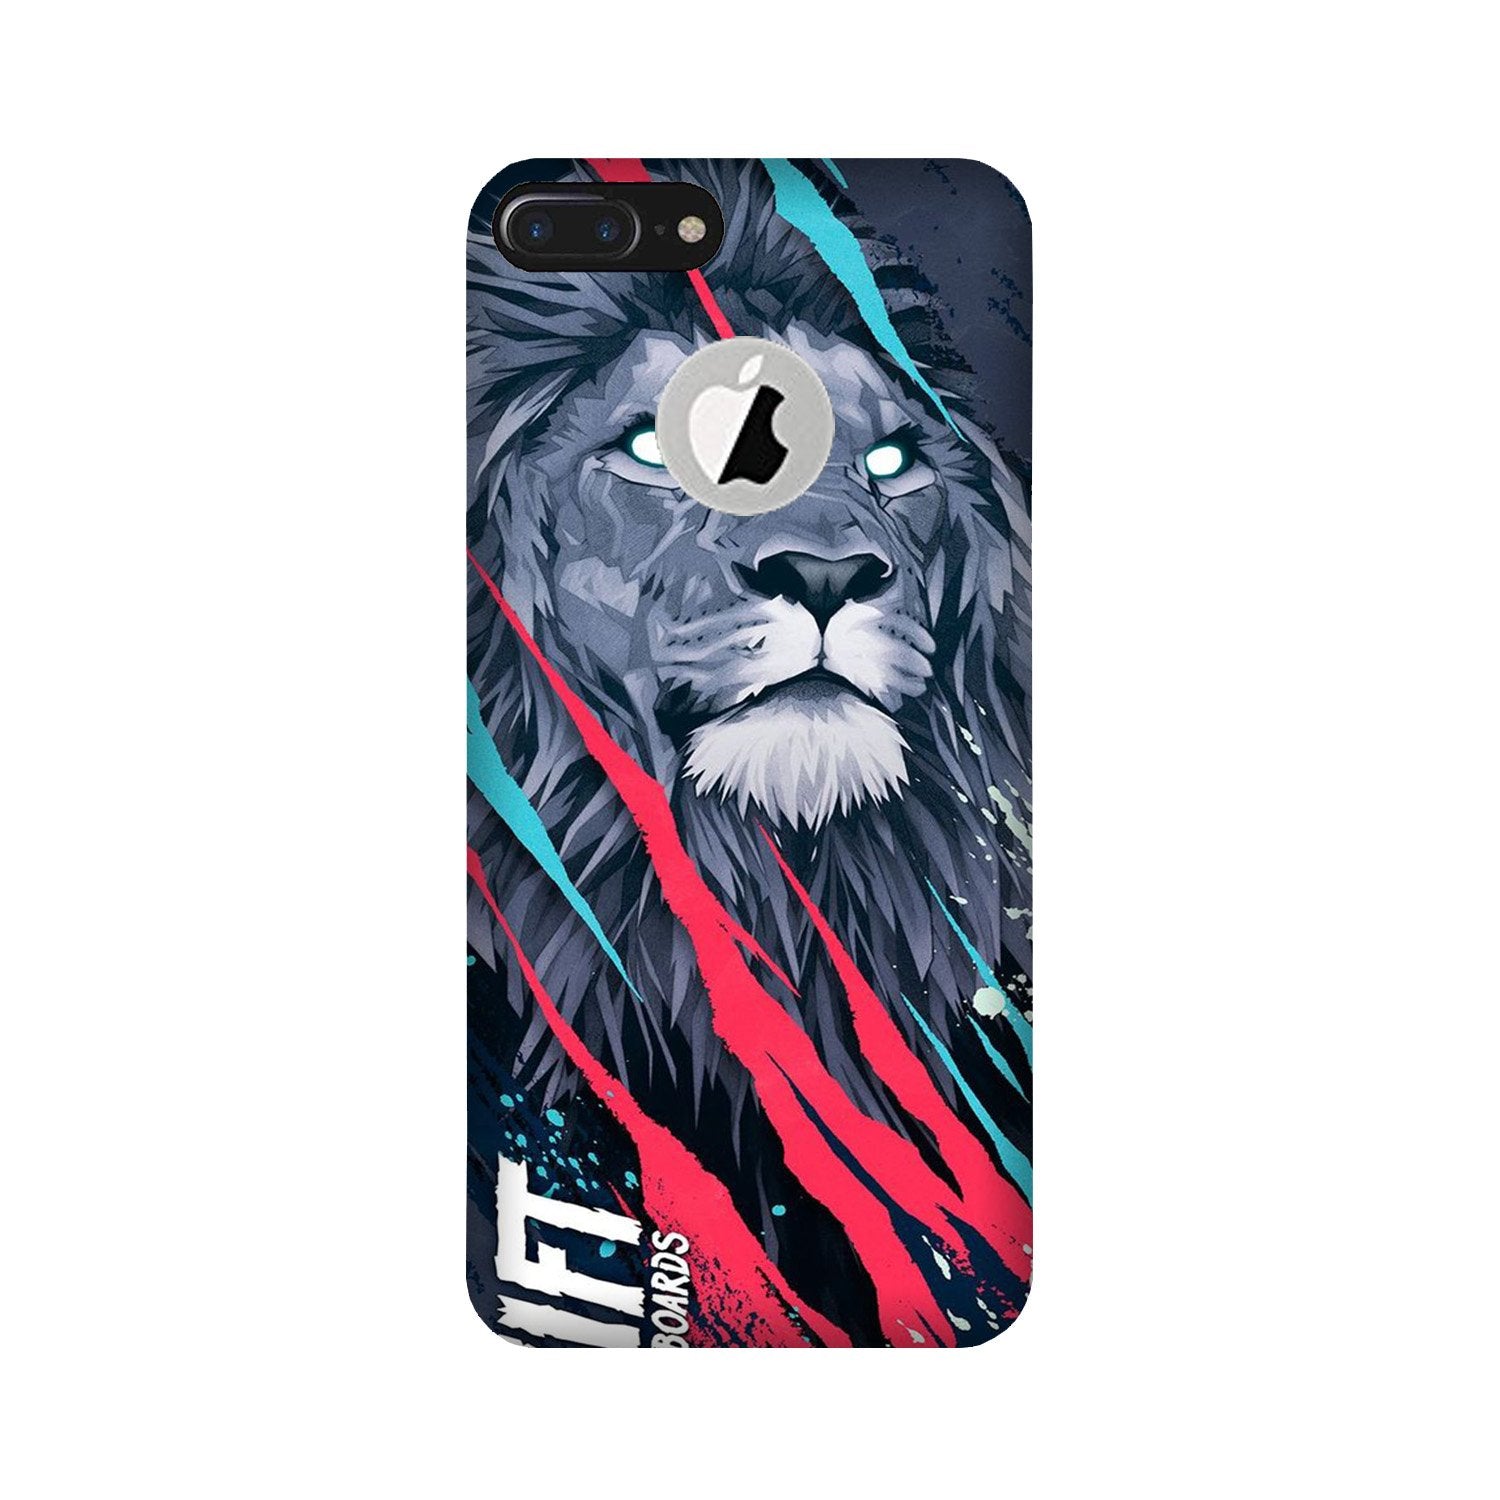 Lion Case for iPhone 7 Plus logo cut (Design No. 278)